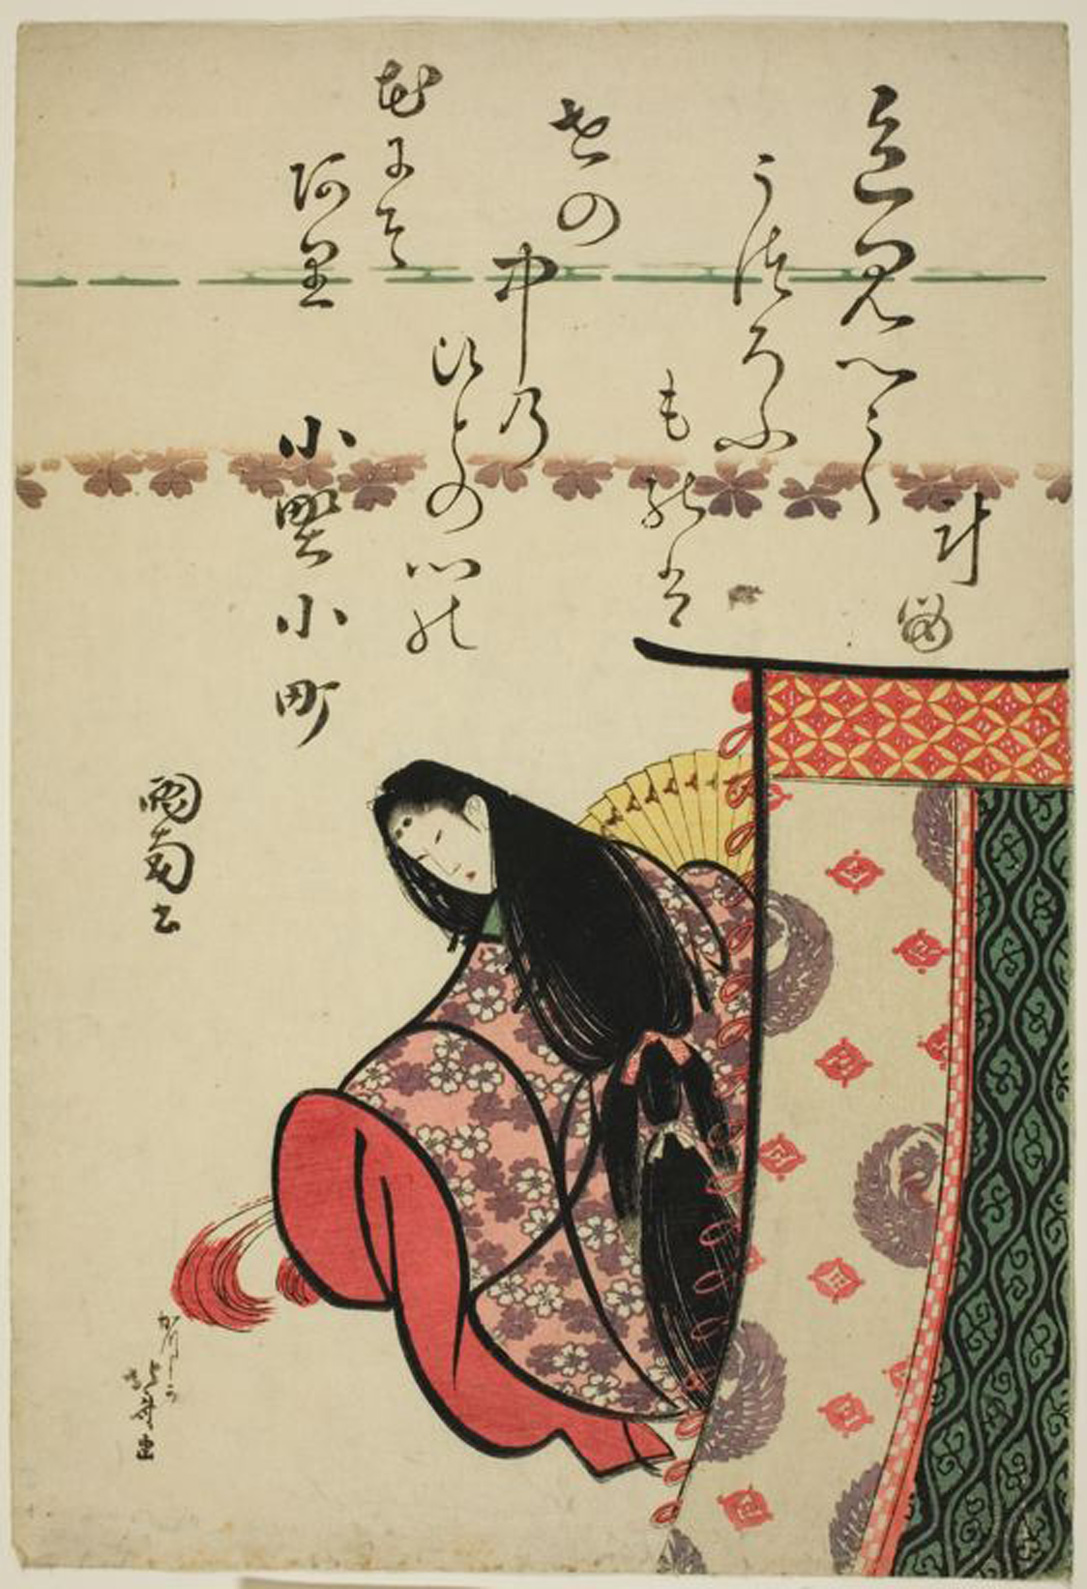 Hokusai - Ono no Komachi - 6 Poetic Immortals